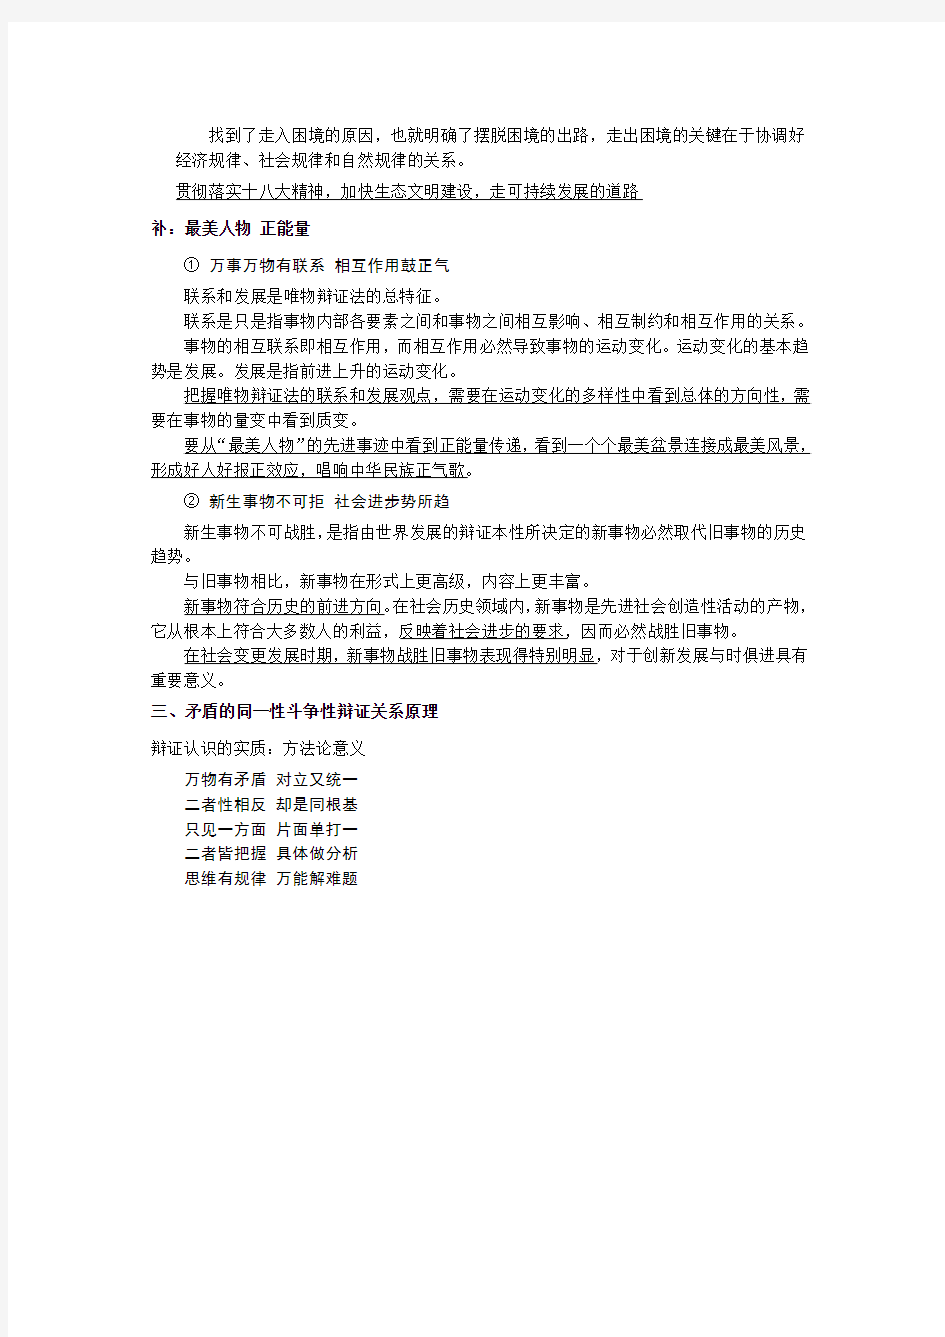 考研政治马原十大模板(整理版)——李海洋老师的最新课程笔记整理